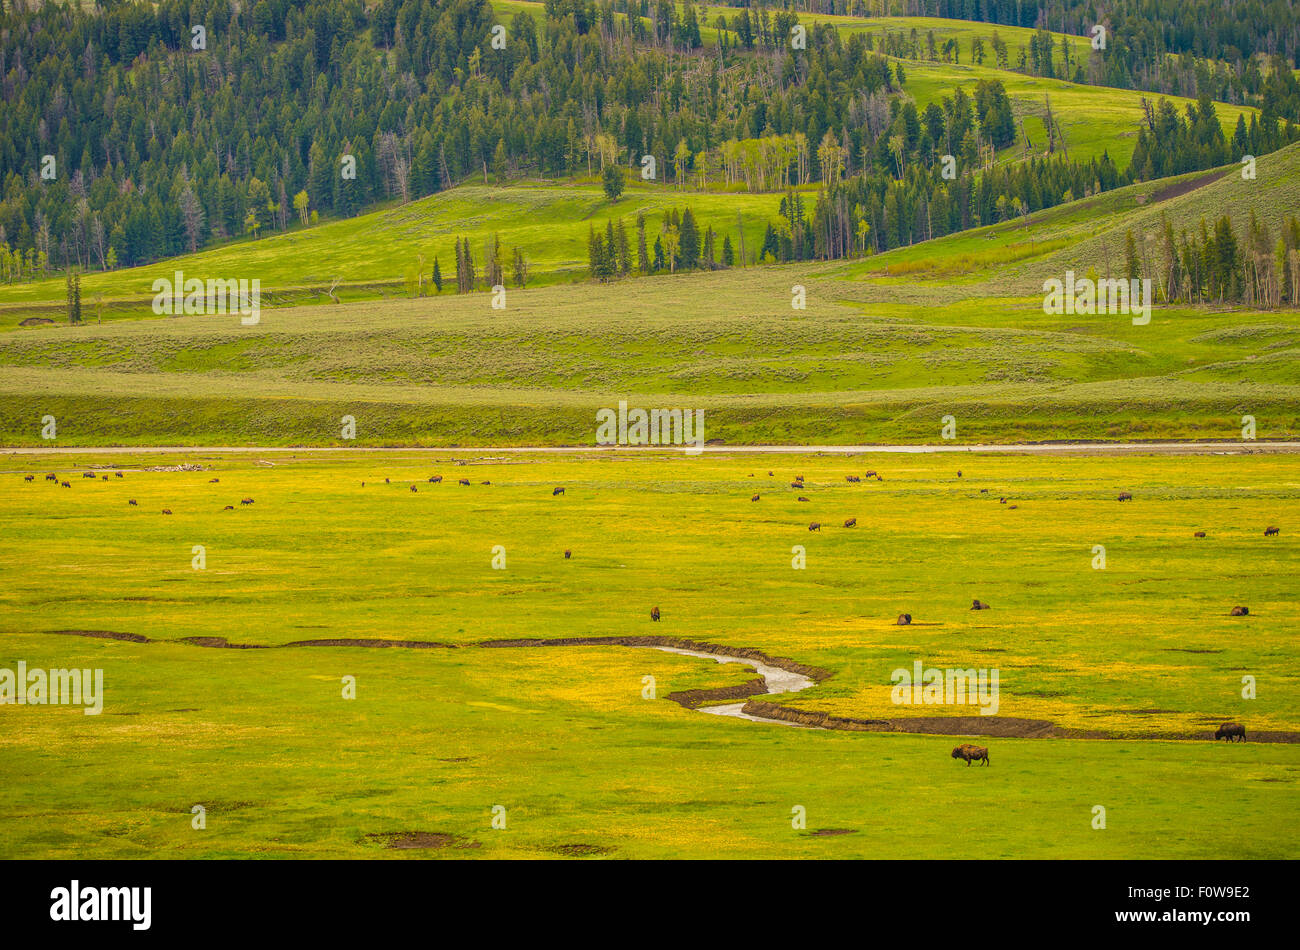 Landschaftlich von Wildblumen, weidenden Bisons Fluss, Berge, Wald und sanften Hügeln. Lamar Valley, Yellowstone Nat.-Park, Wyoming Stockfoto